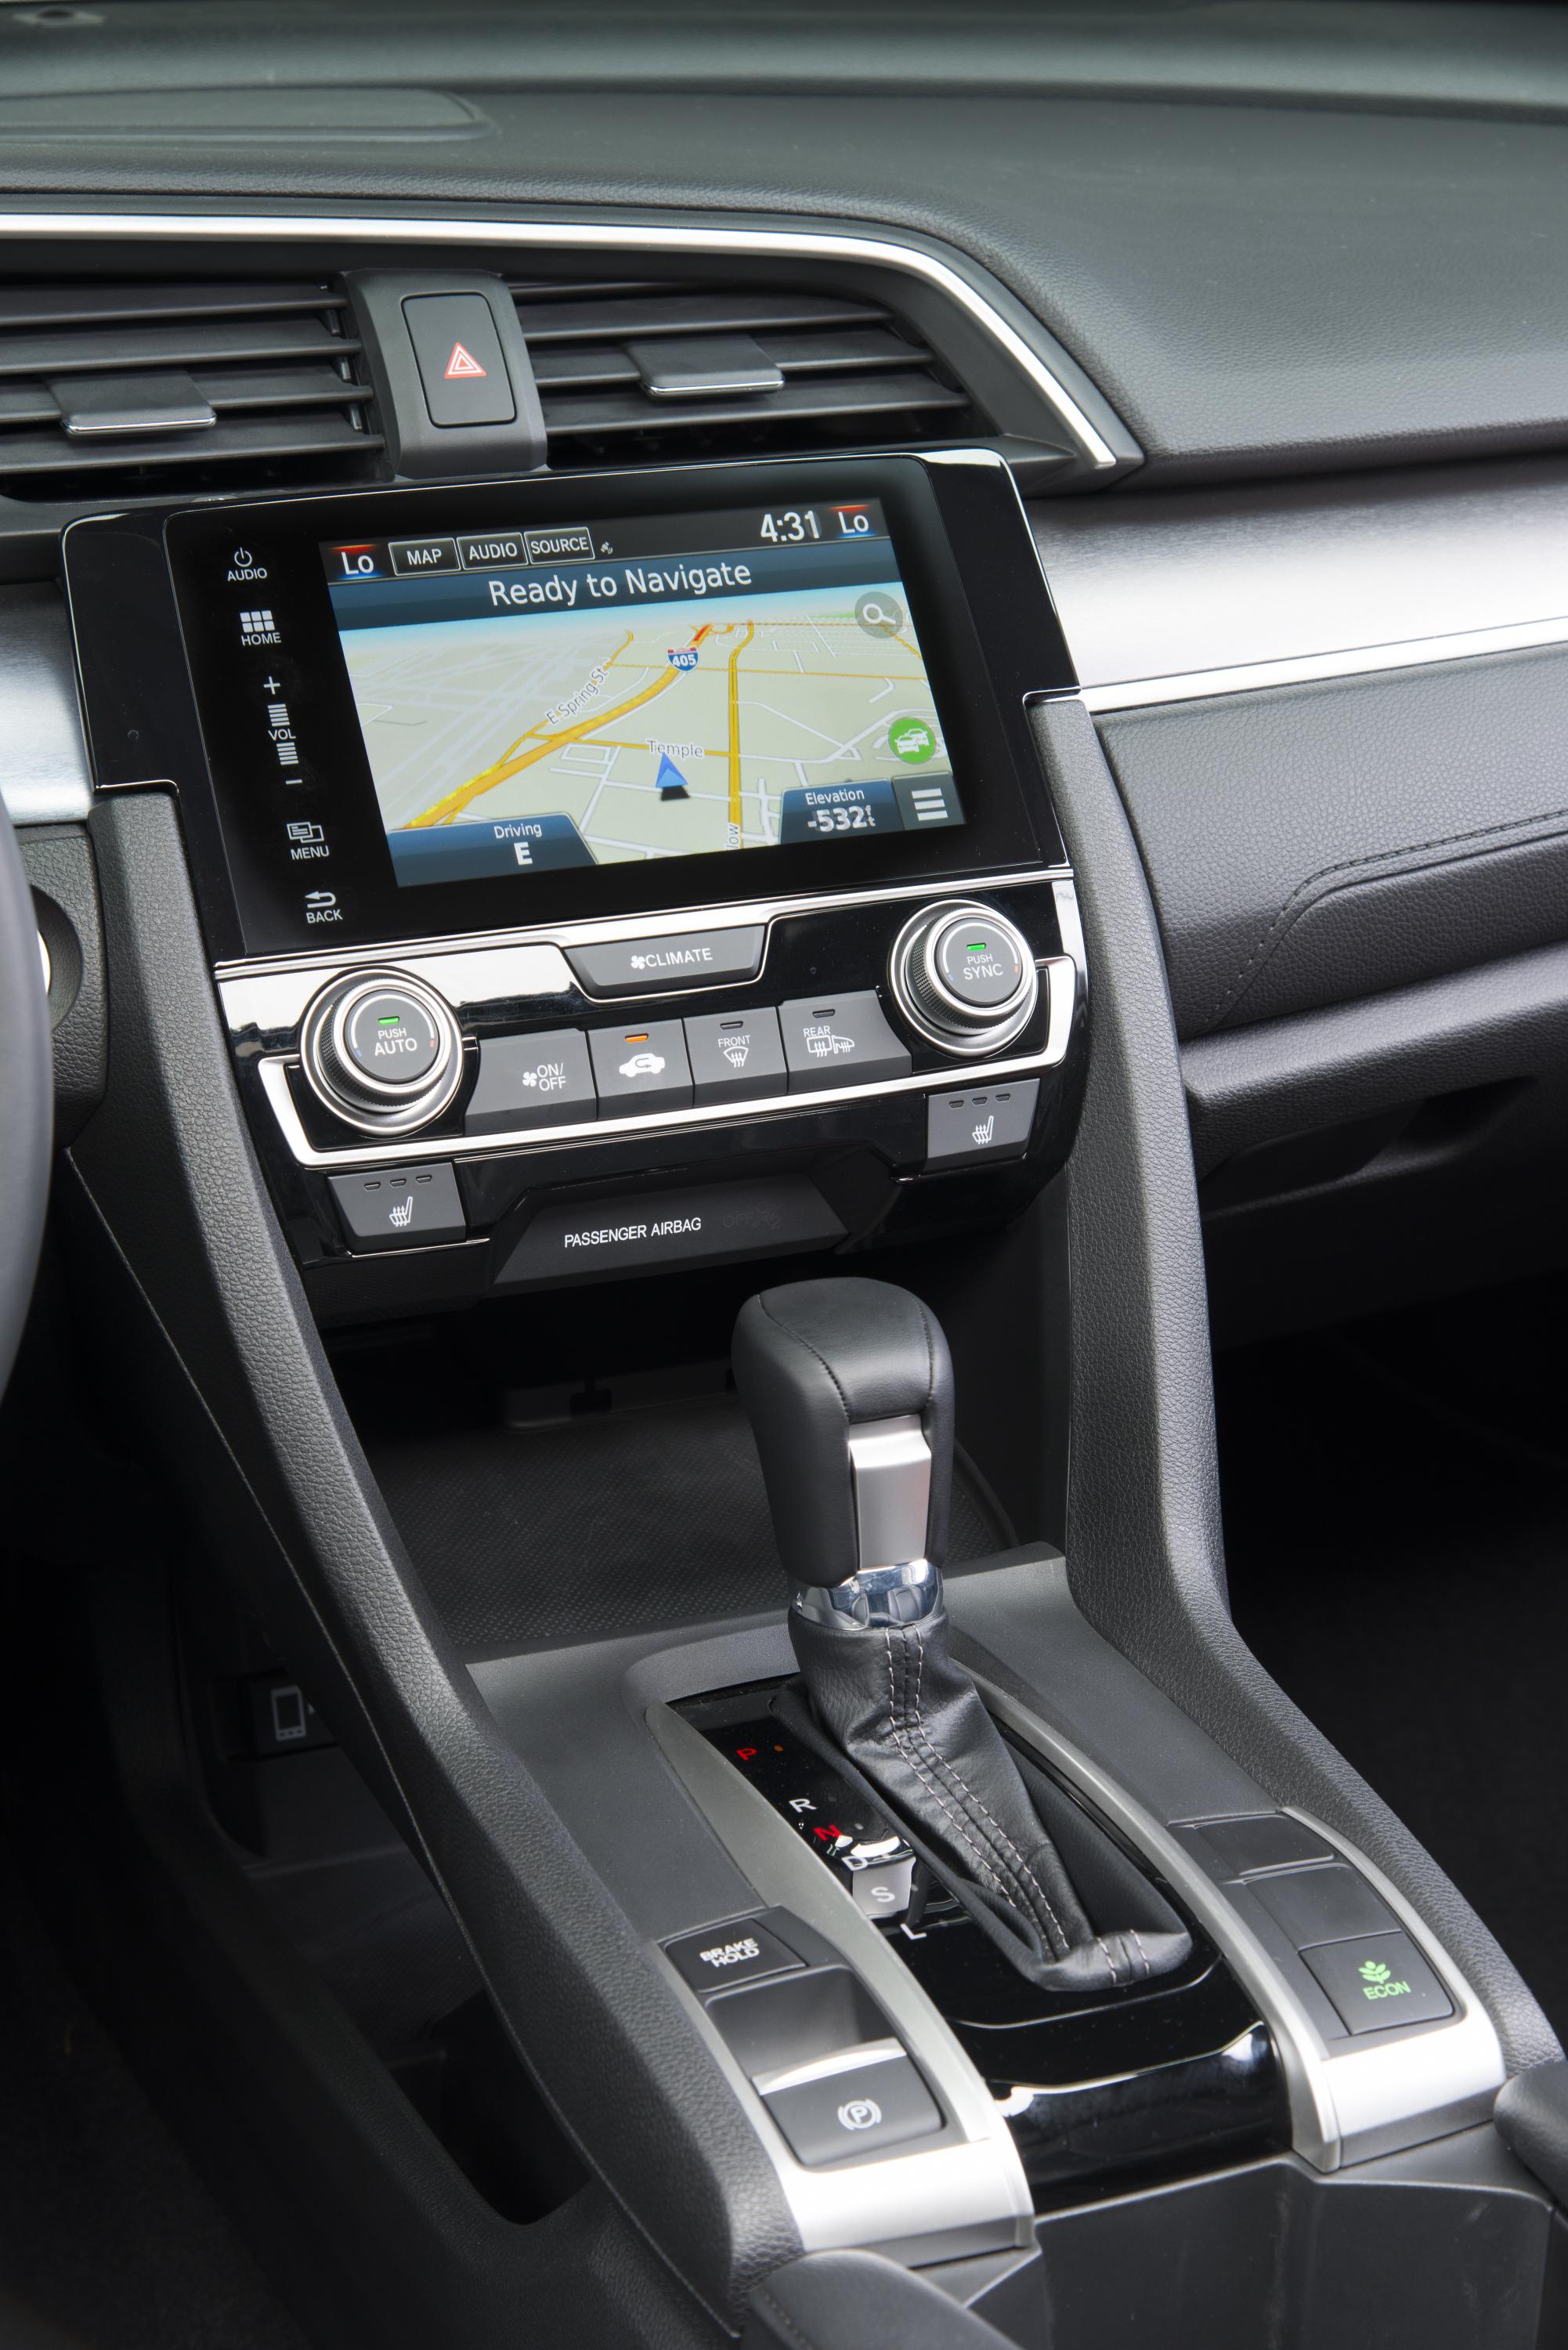 2022 Honda Civic Sedan center console unveiled